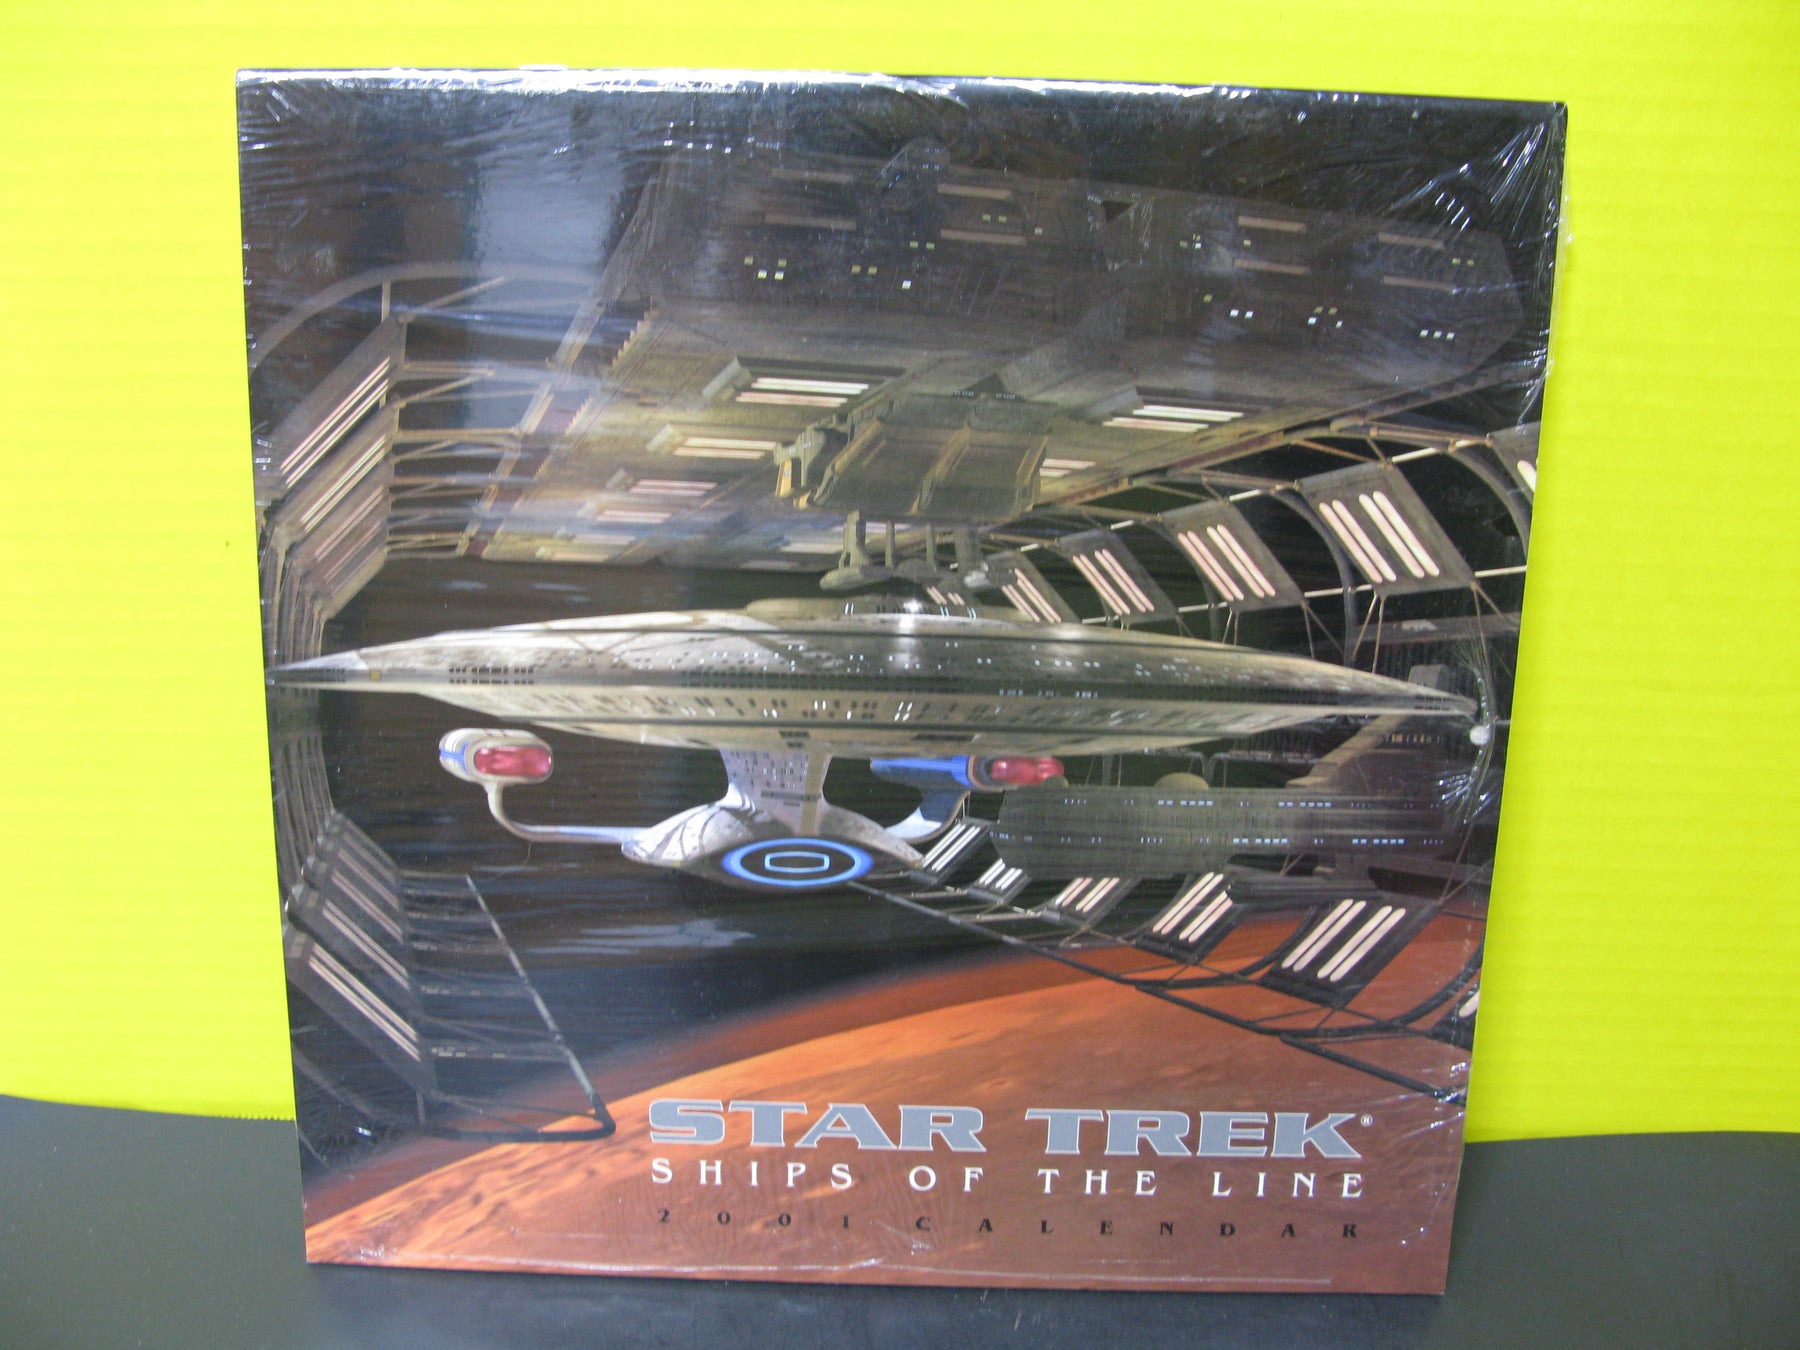 2001 Star Trek Ships of the Line Calendar